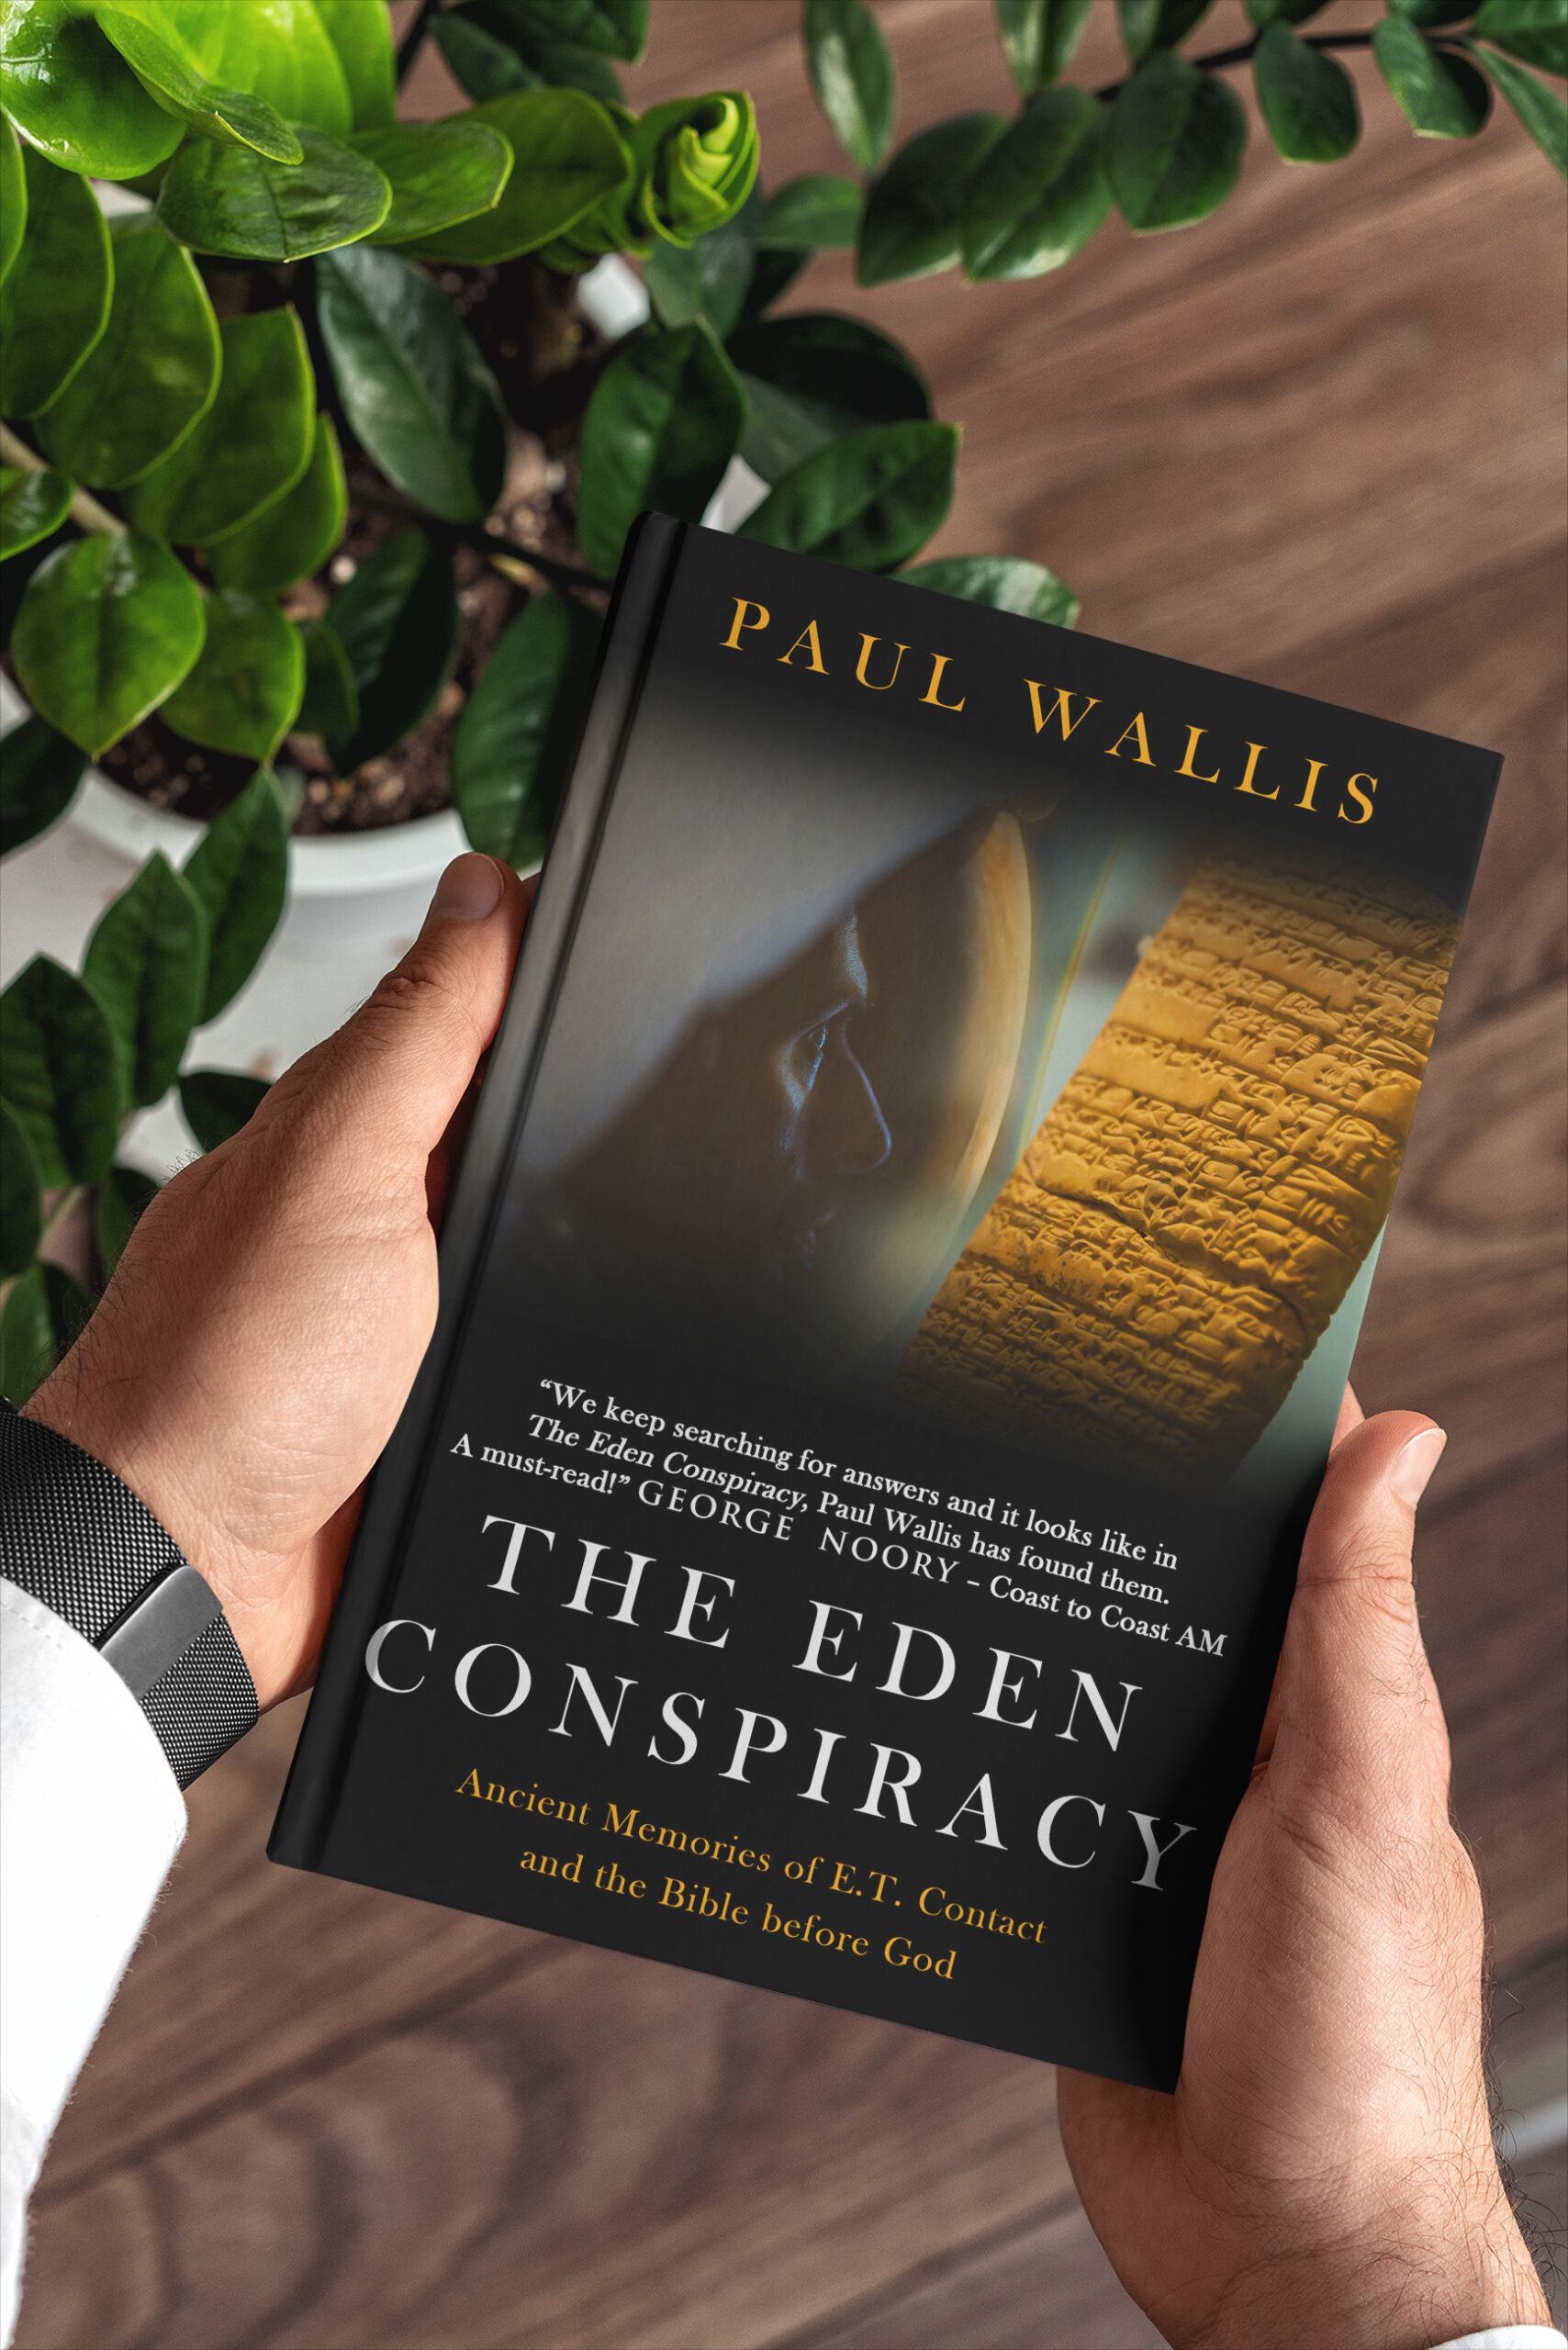 Paul Wallis the Eden conspiracy